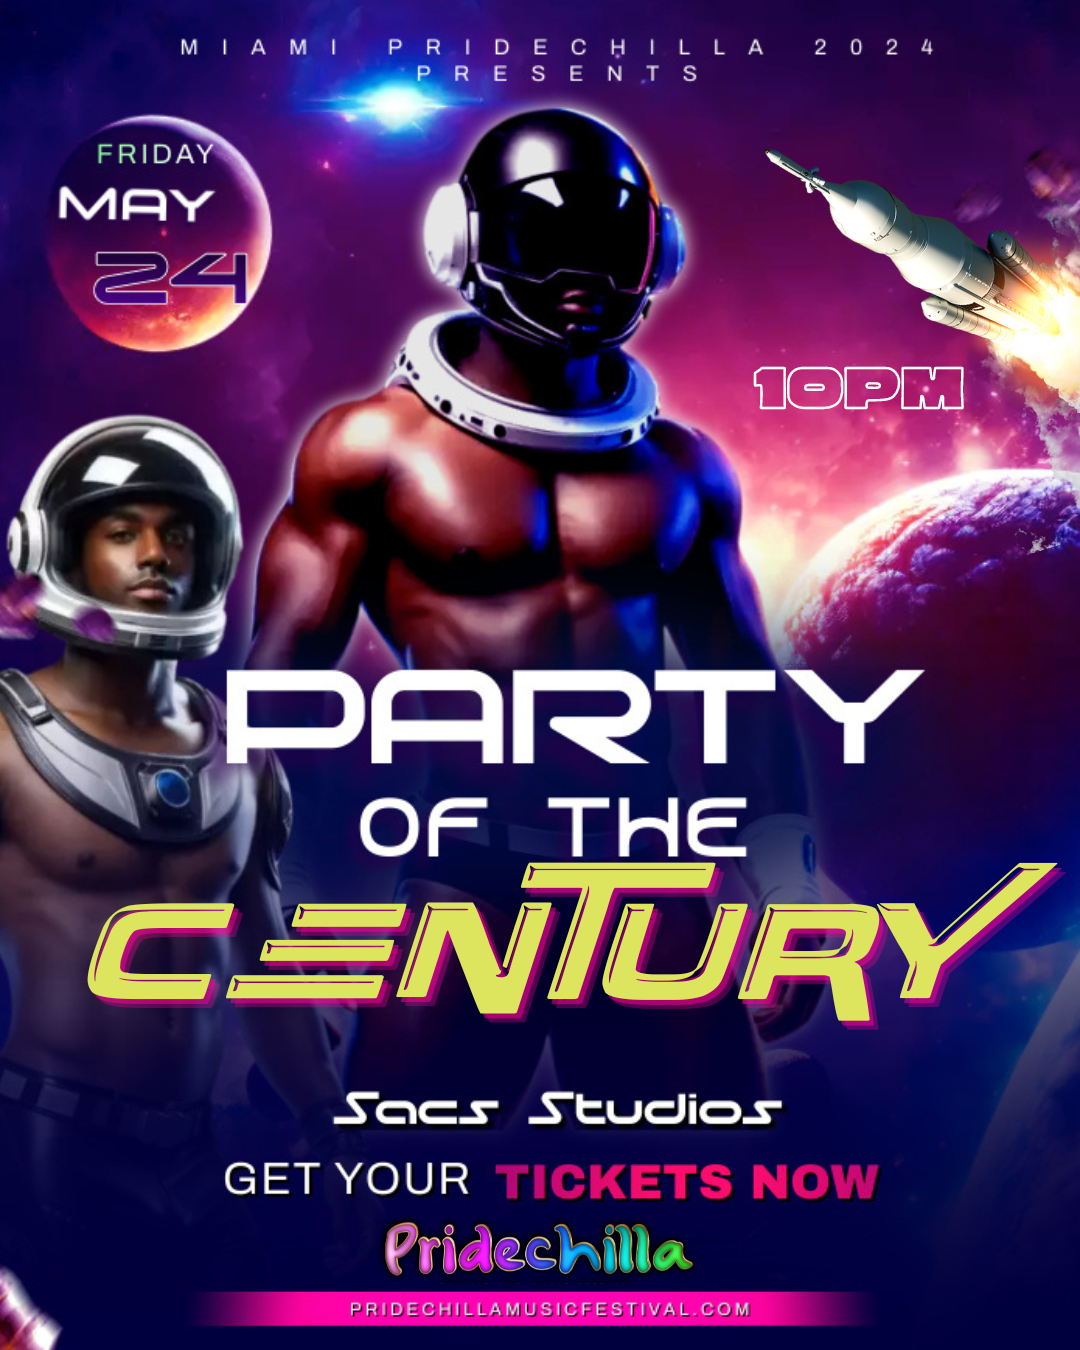 Party of the Century  on may. 24, 22:00@Sacs Studios - Compra entradas y obtén información enAfro Pride Federation pridechillamusicfestival